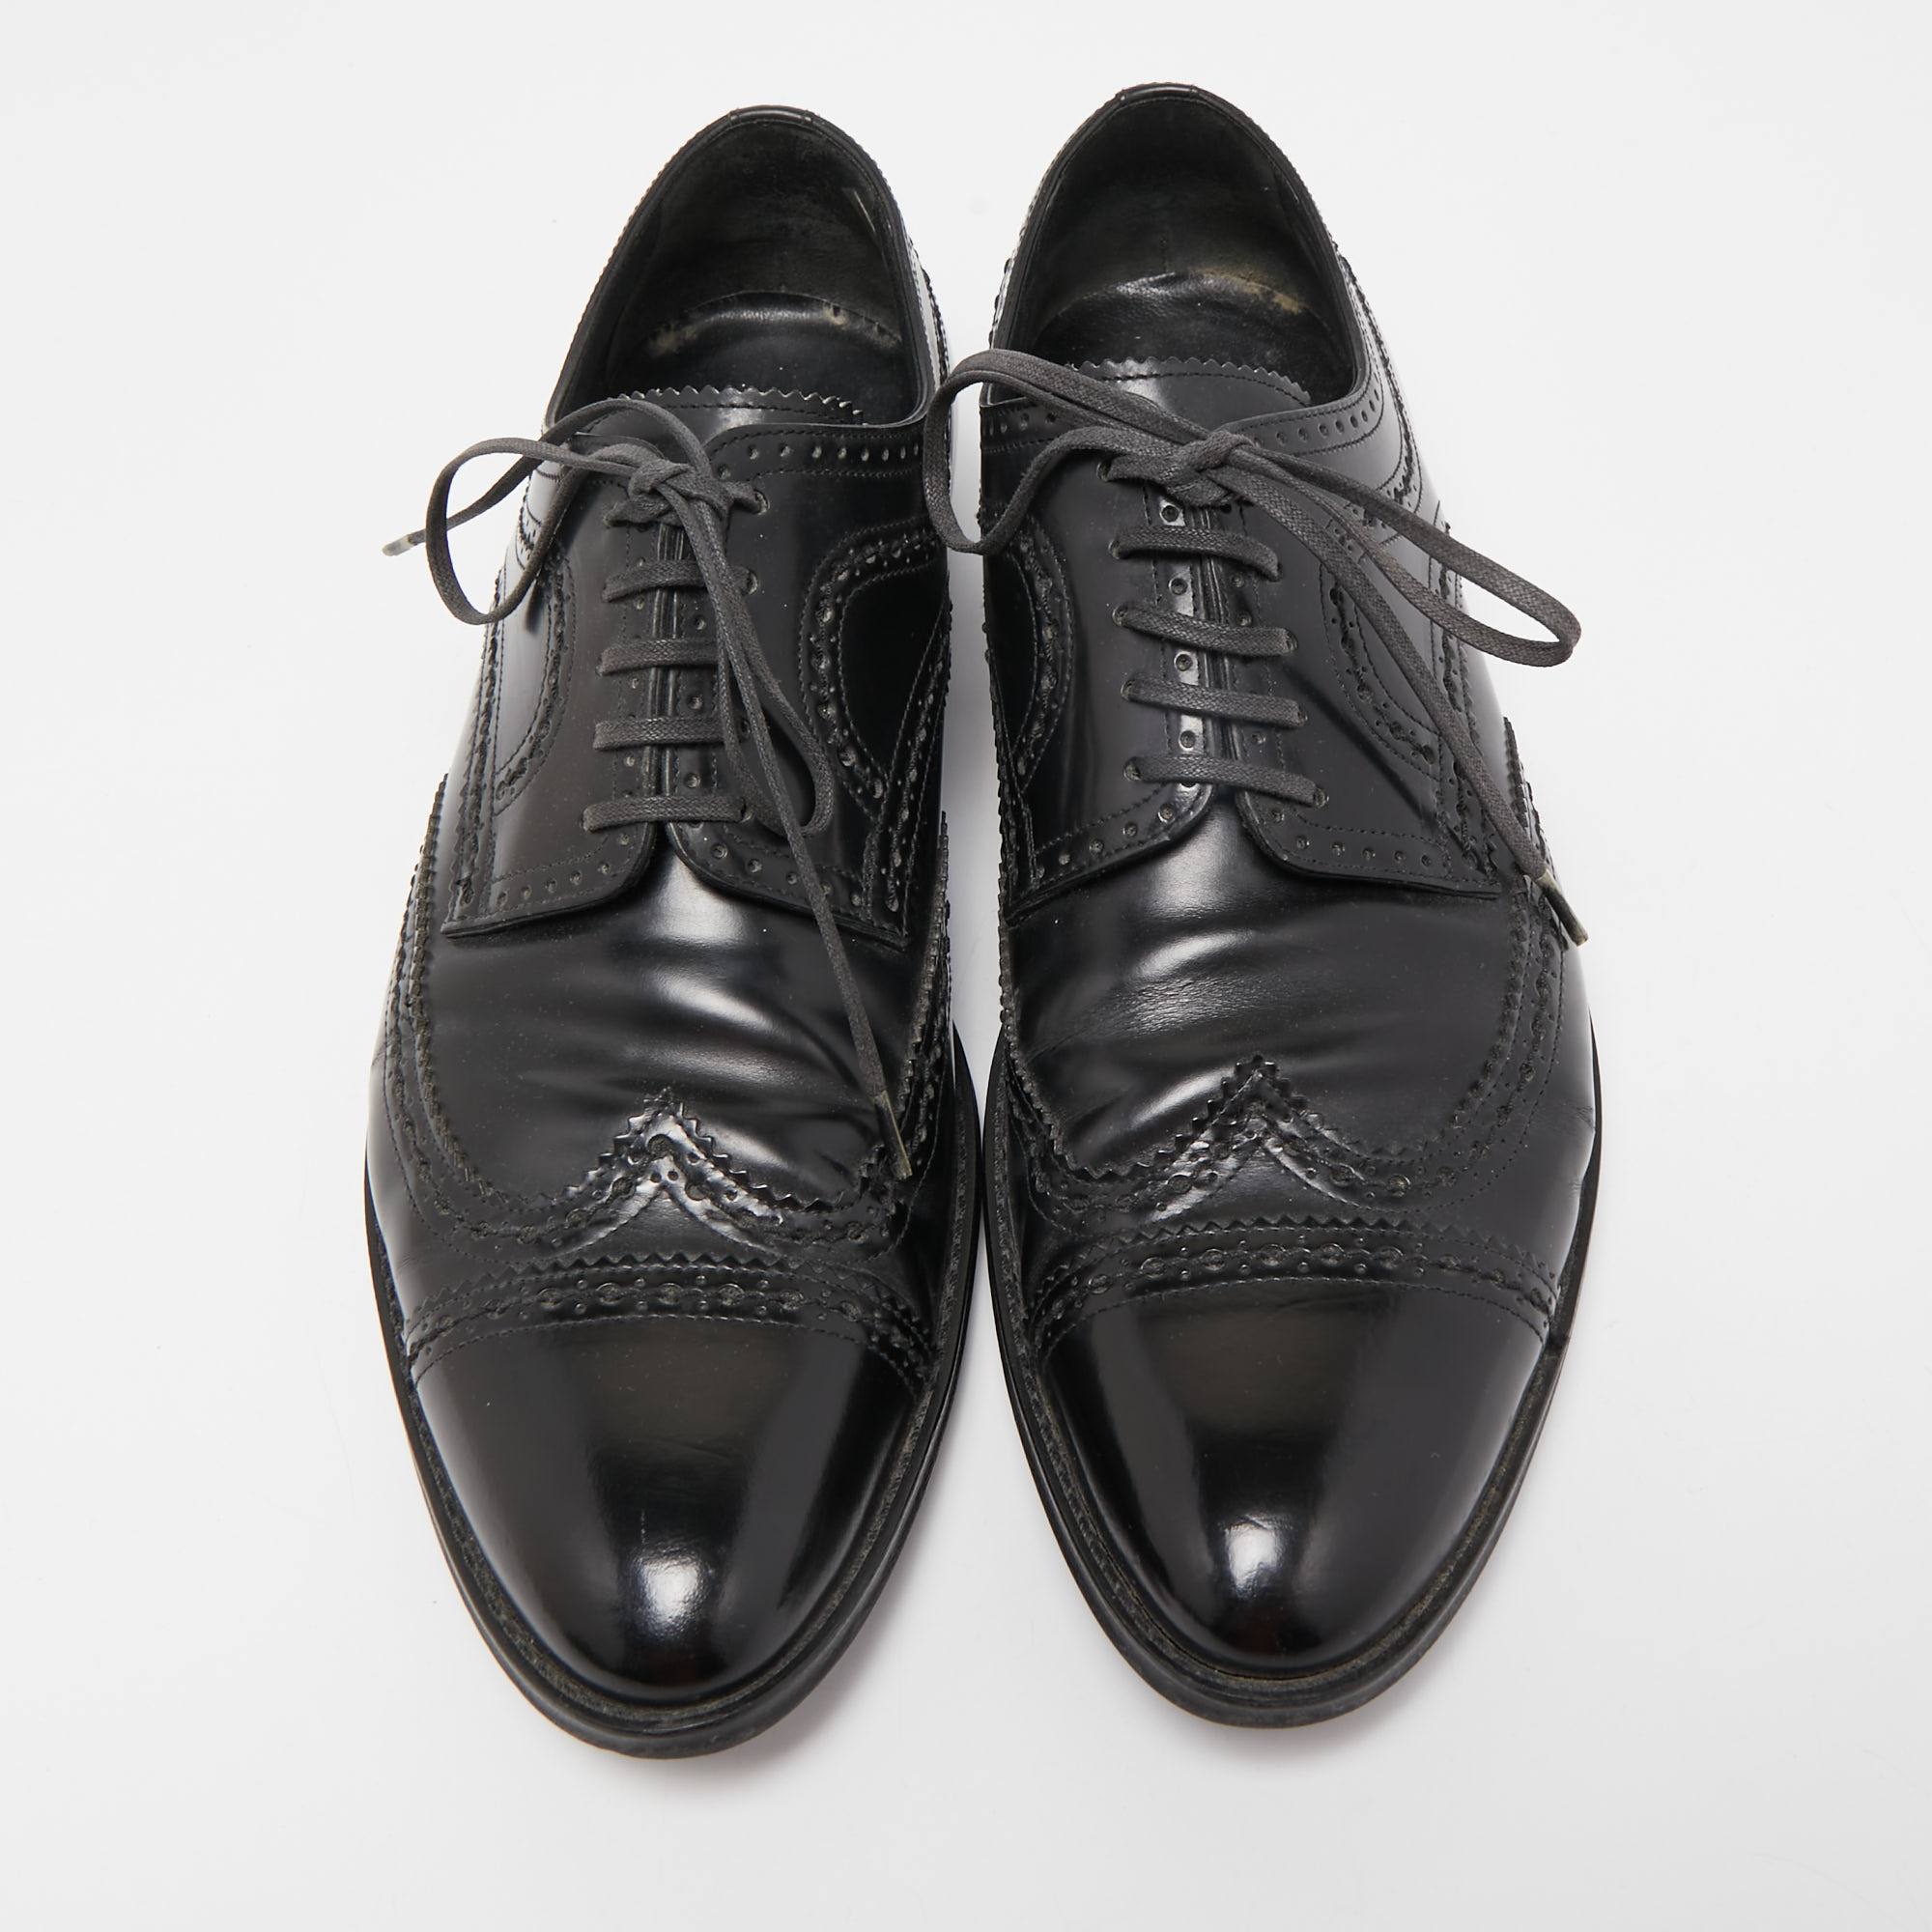 Louis Vuitton Black Brogue Leather Lace Up Derby Size 41